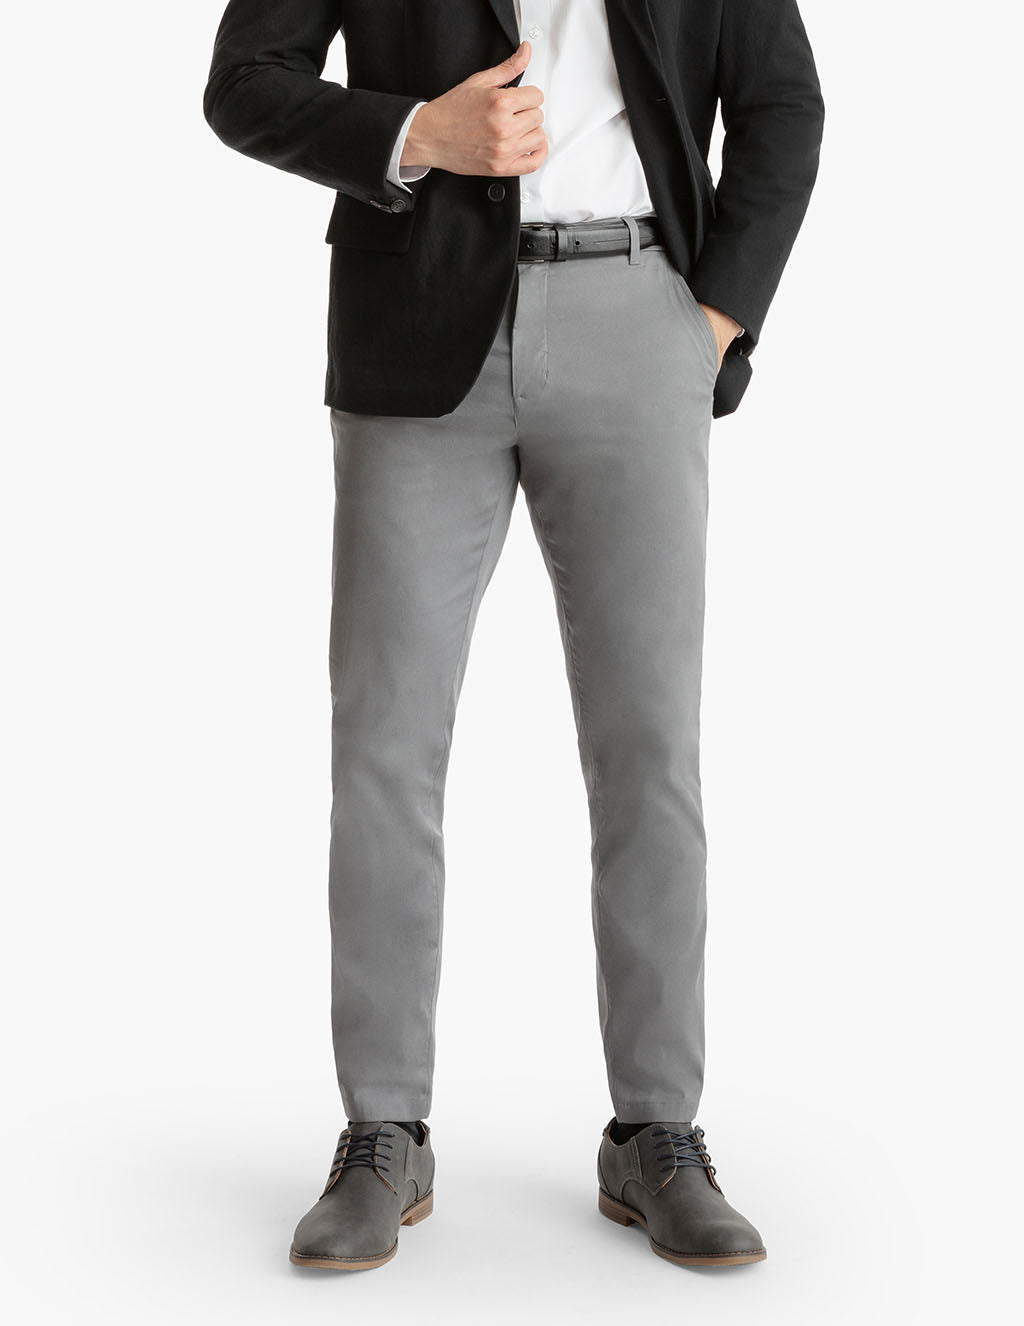 Dressy Yoga Pants Work Suit Set Office Business Long Sleeve Formal Jacket  Pant Suit Slim Fit Trouser Lace Panel